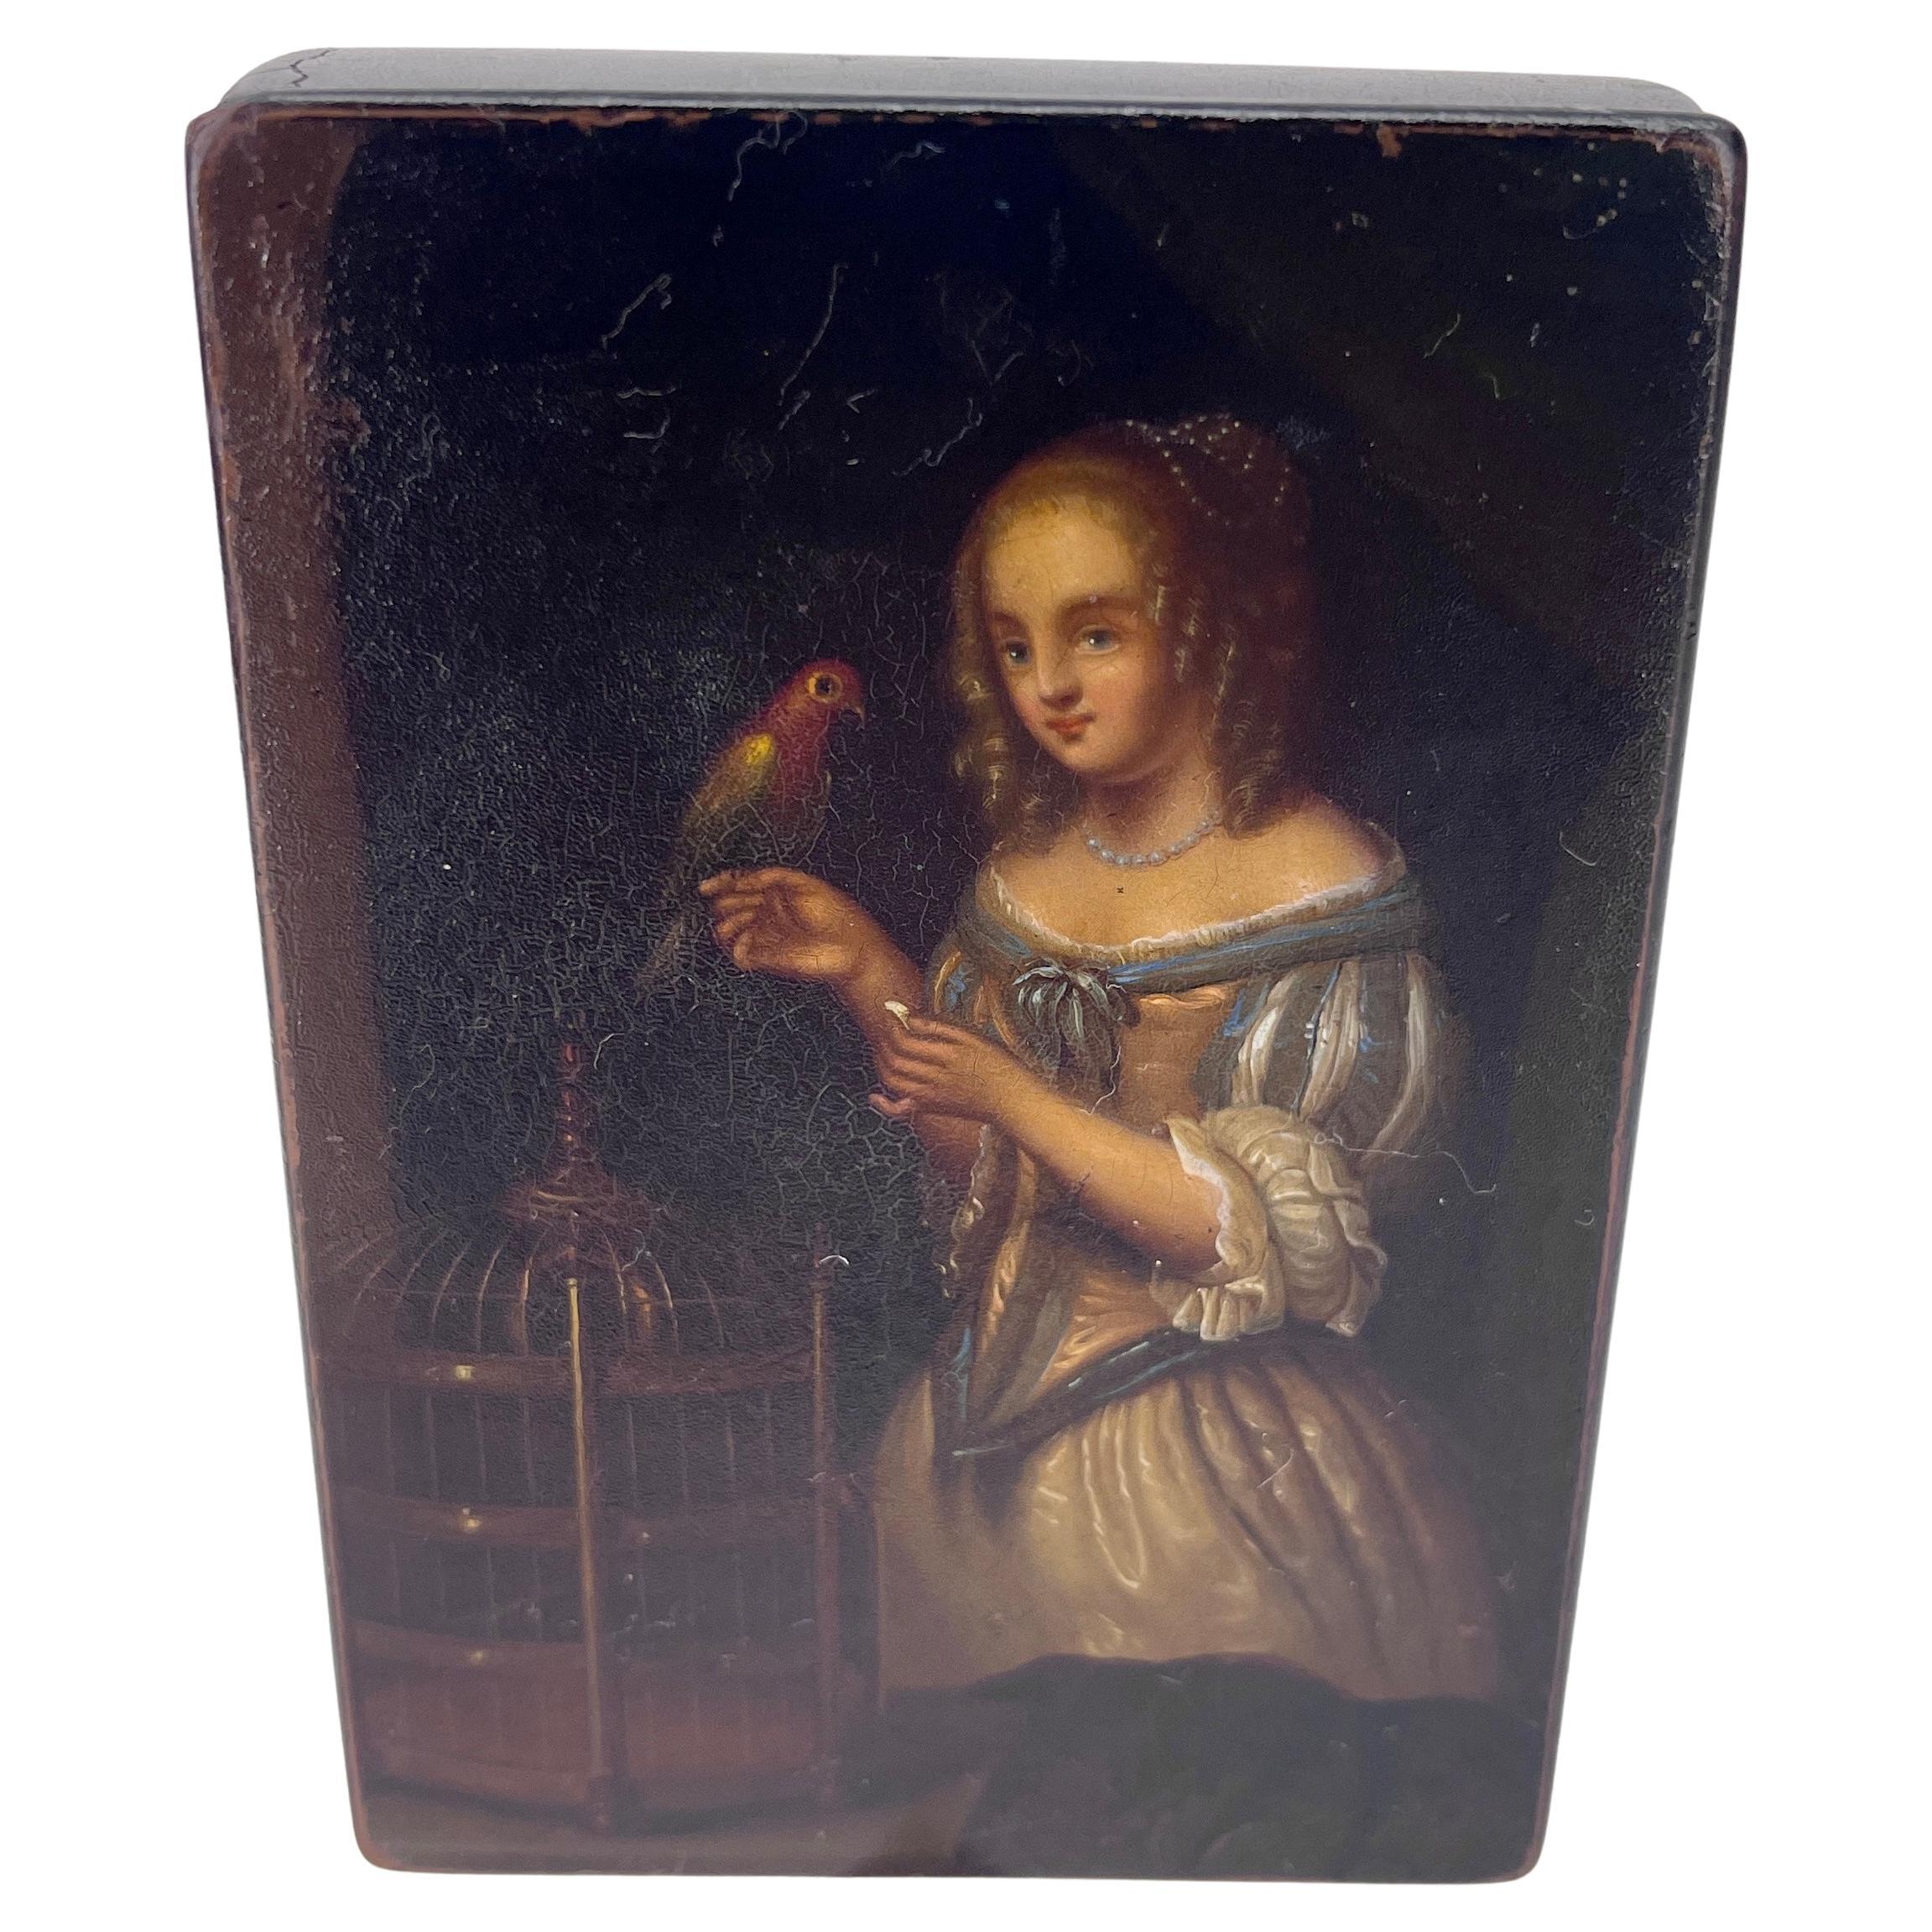 Tabatière ou vanity box en papier mâché laqué noir peint à la main au début du 19e siècle
Fabriquée en Autriche au début des années 1800, cette boîte décorative présente une scène peinte à la main d'une jeune beauté tenant un perroquet, dans le